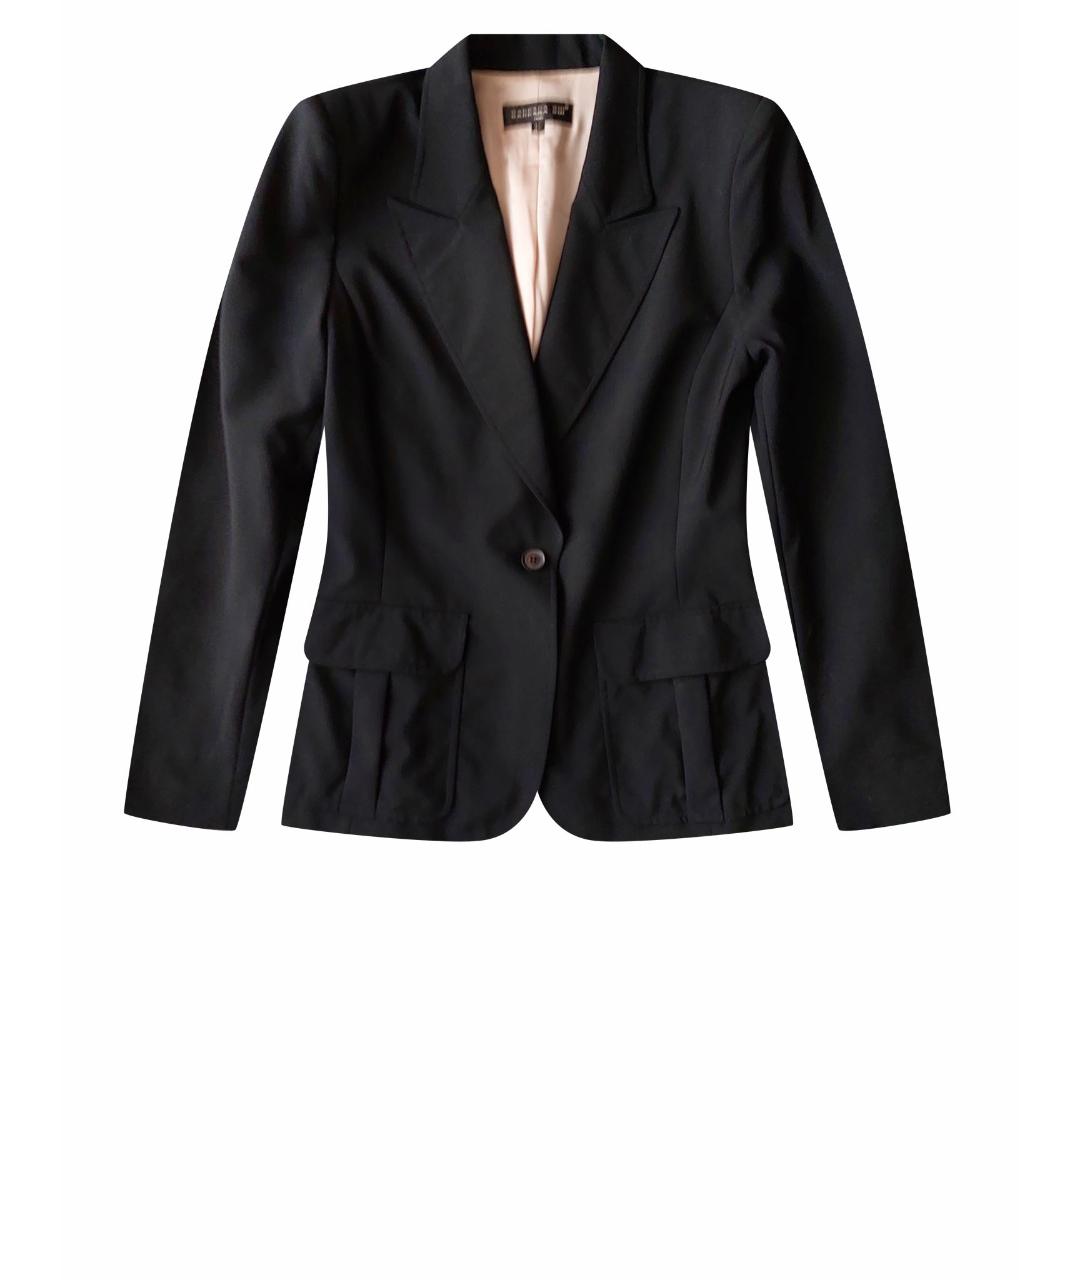 BARBARA BUI Черный шерстяной жакет/пиджак, фото 1